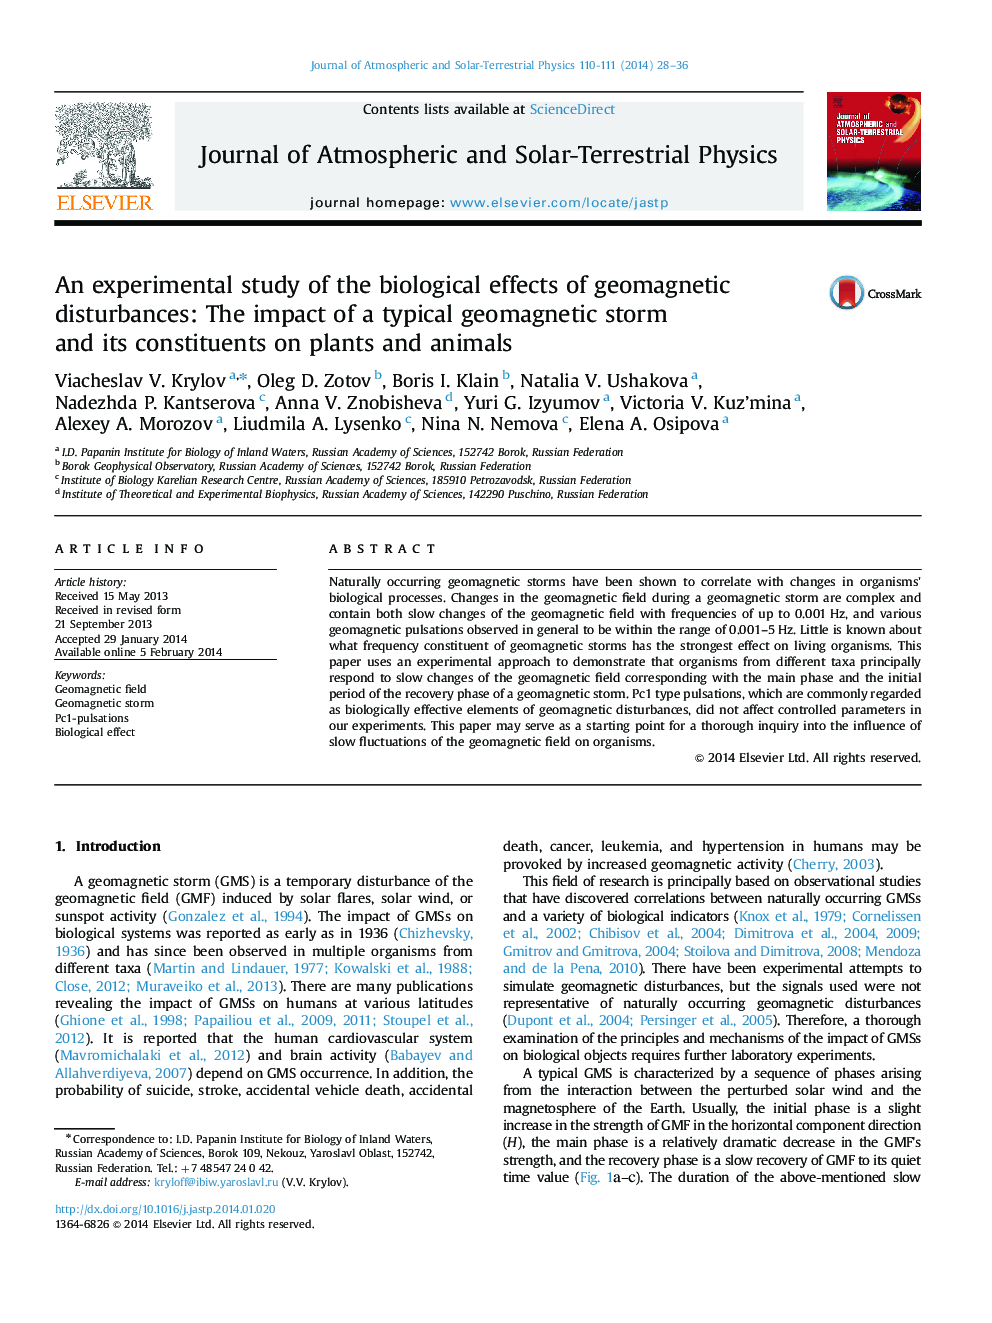 یک مطالعه تجربی از اثرات بیولوژیکی اختلالات ژئومغناطیسی: تأثیر یک طوفان ژئومغناطیسی معمولی و اجزای آن بر روی گیاهان و حیوانات 